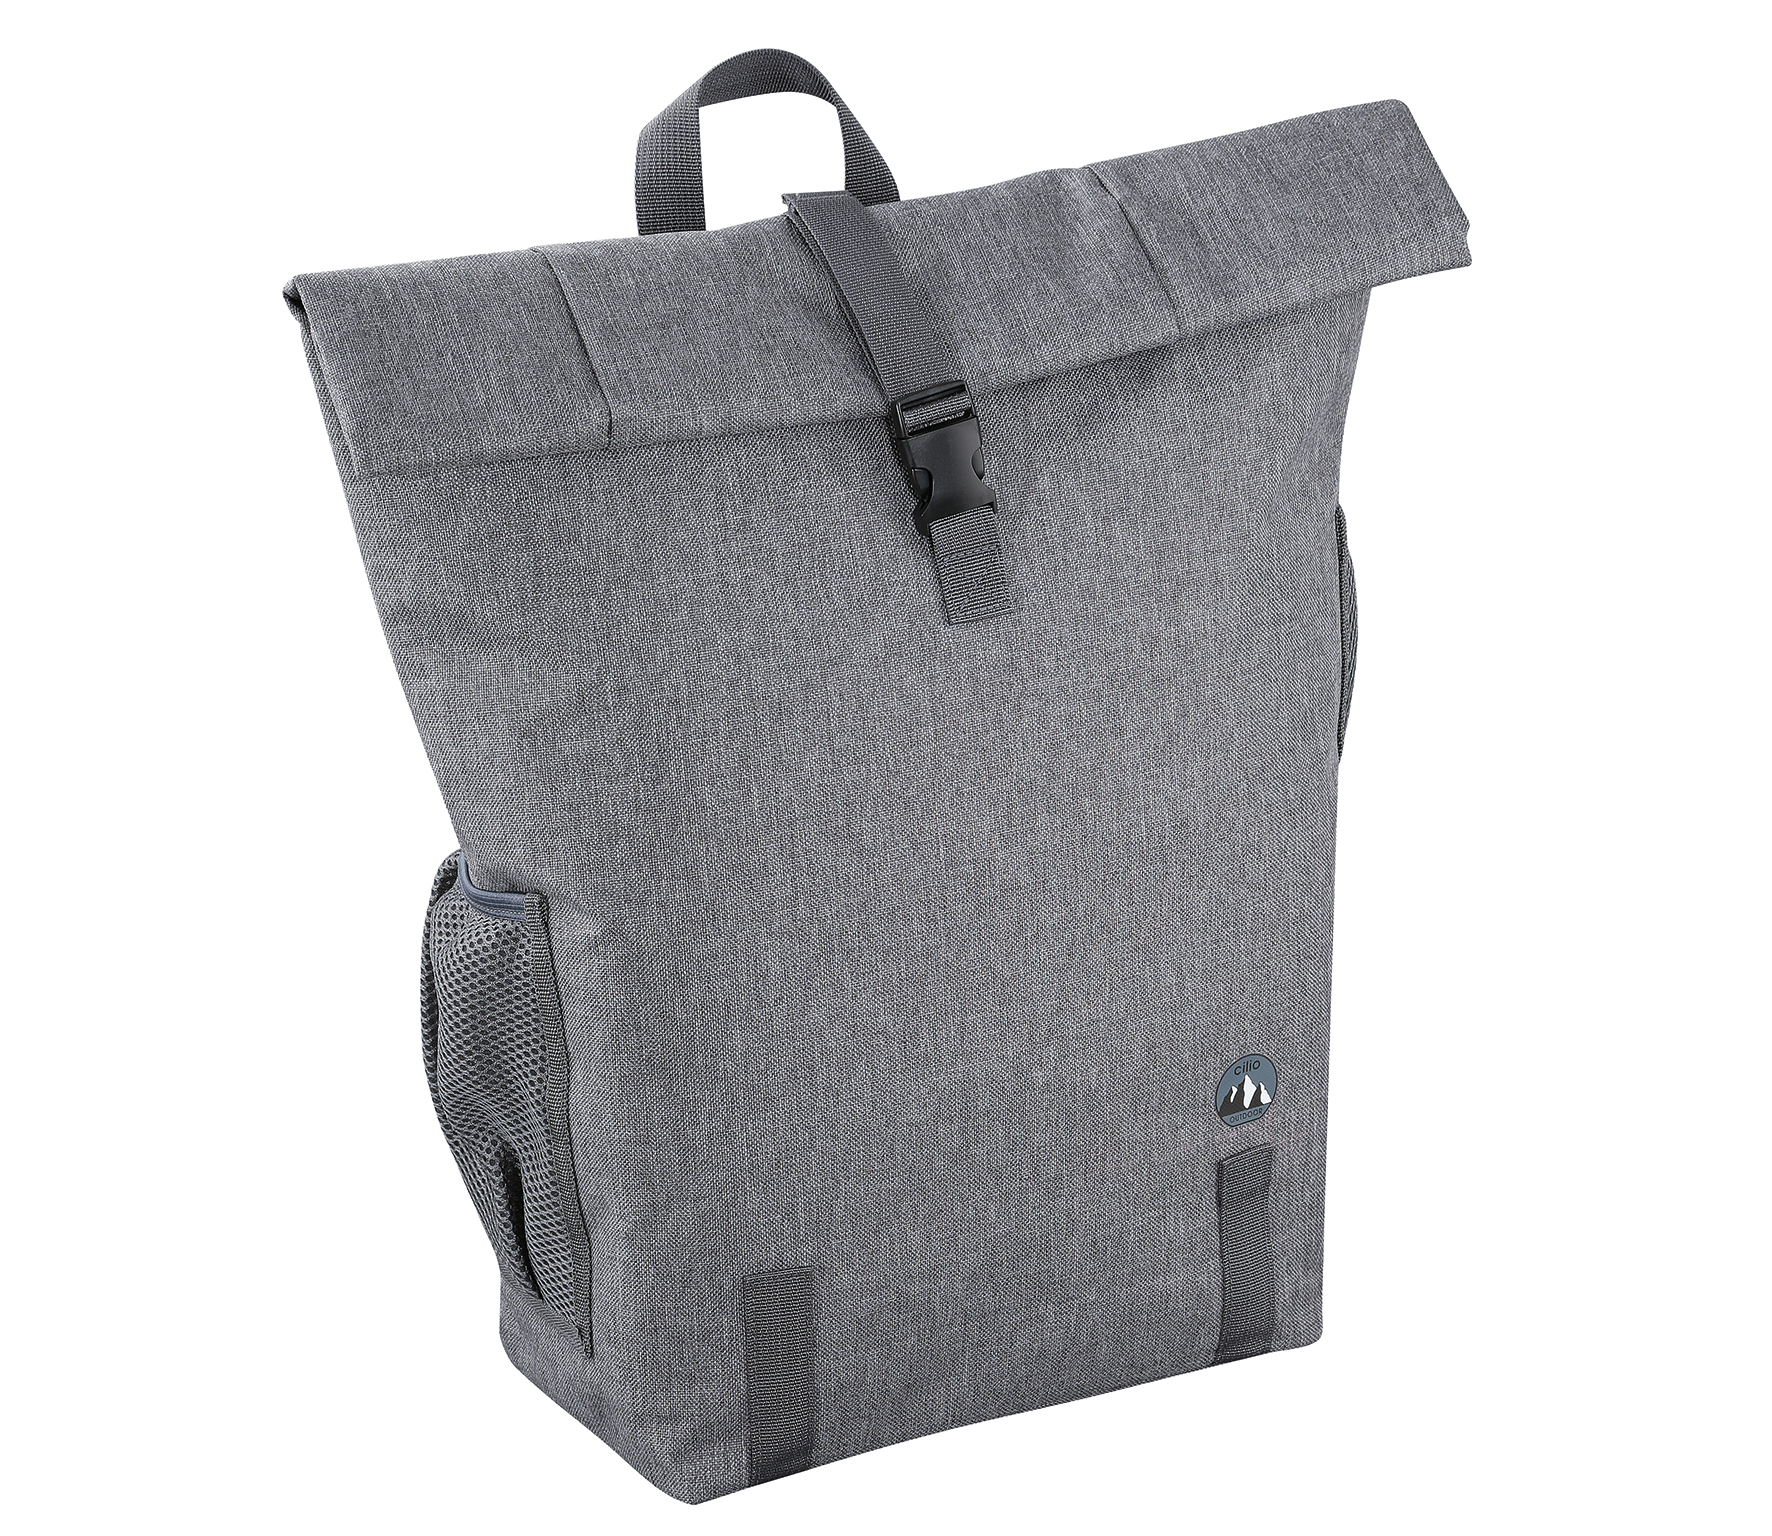 Rucksack GIRO, grau 18 L Feuchtigkeitsschutz für einfache Reinigung innen 2 seitl.Netztaschen, Rolltop mit Klickverschluß